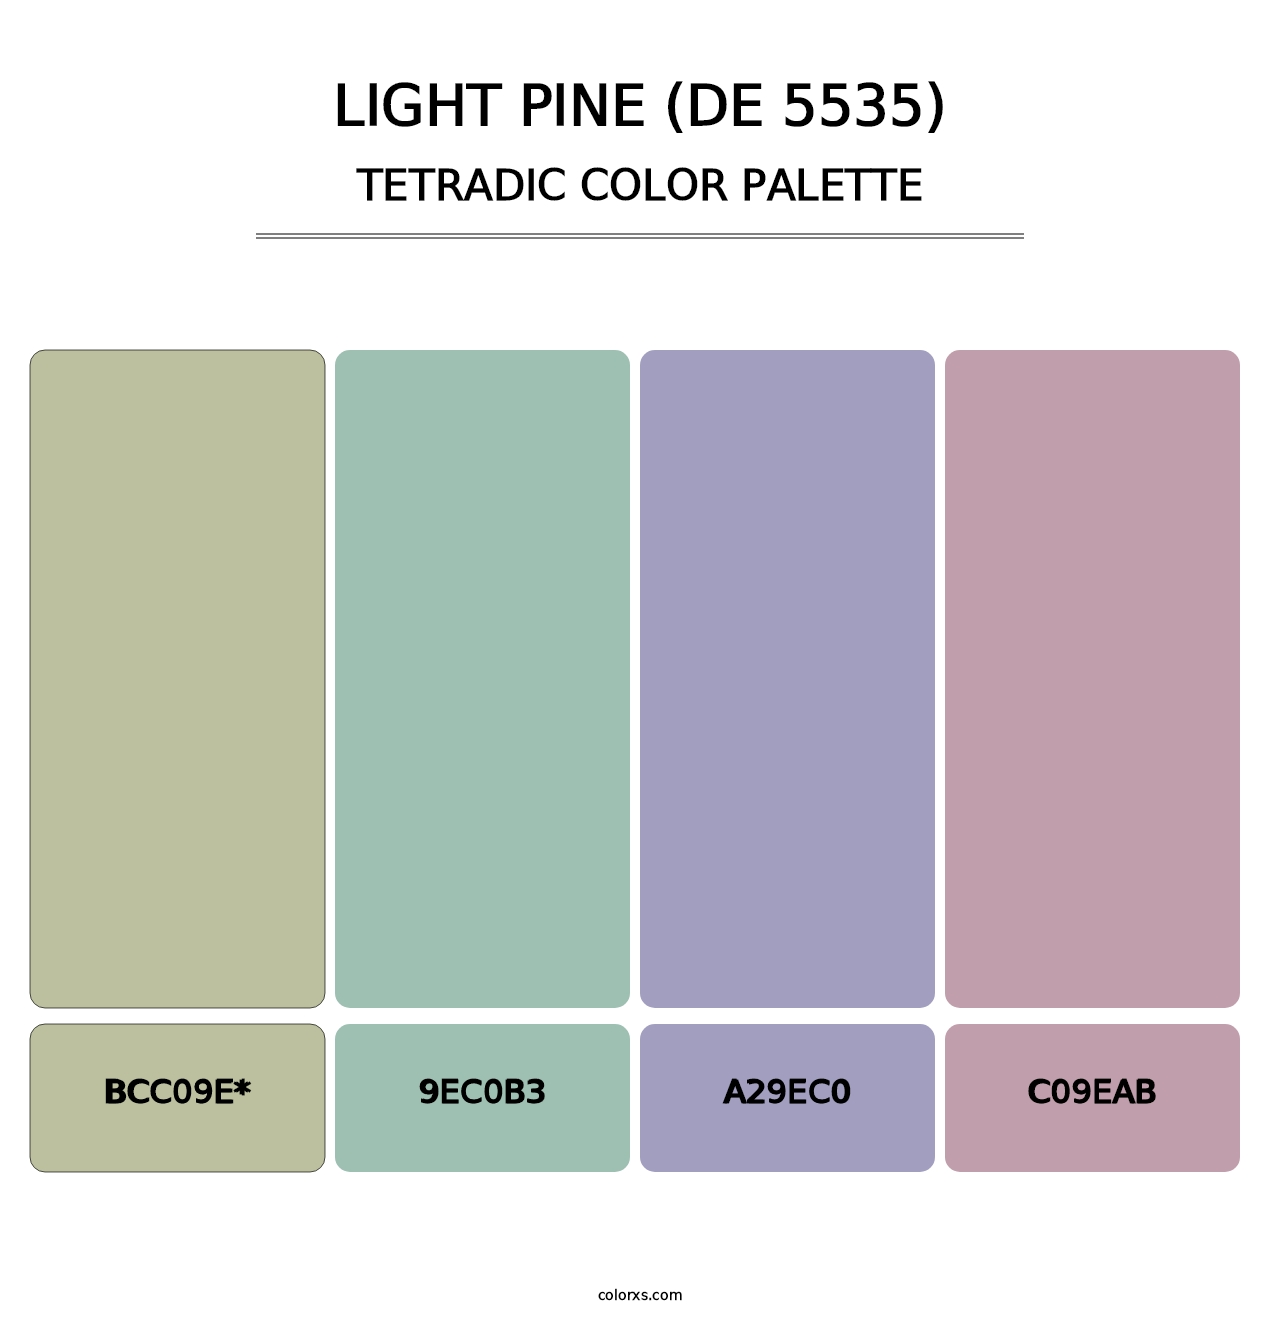 Light Pine (DE 5535) - Tetradic Color Palette